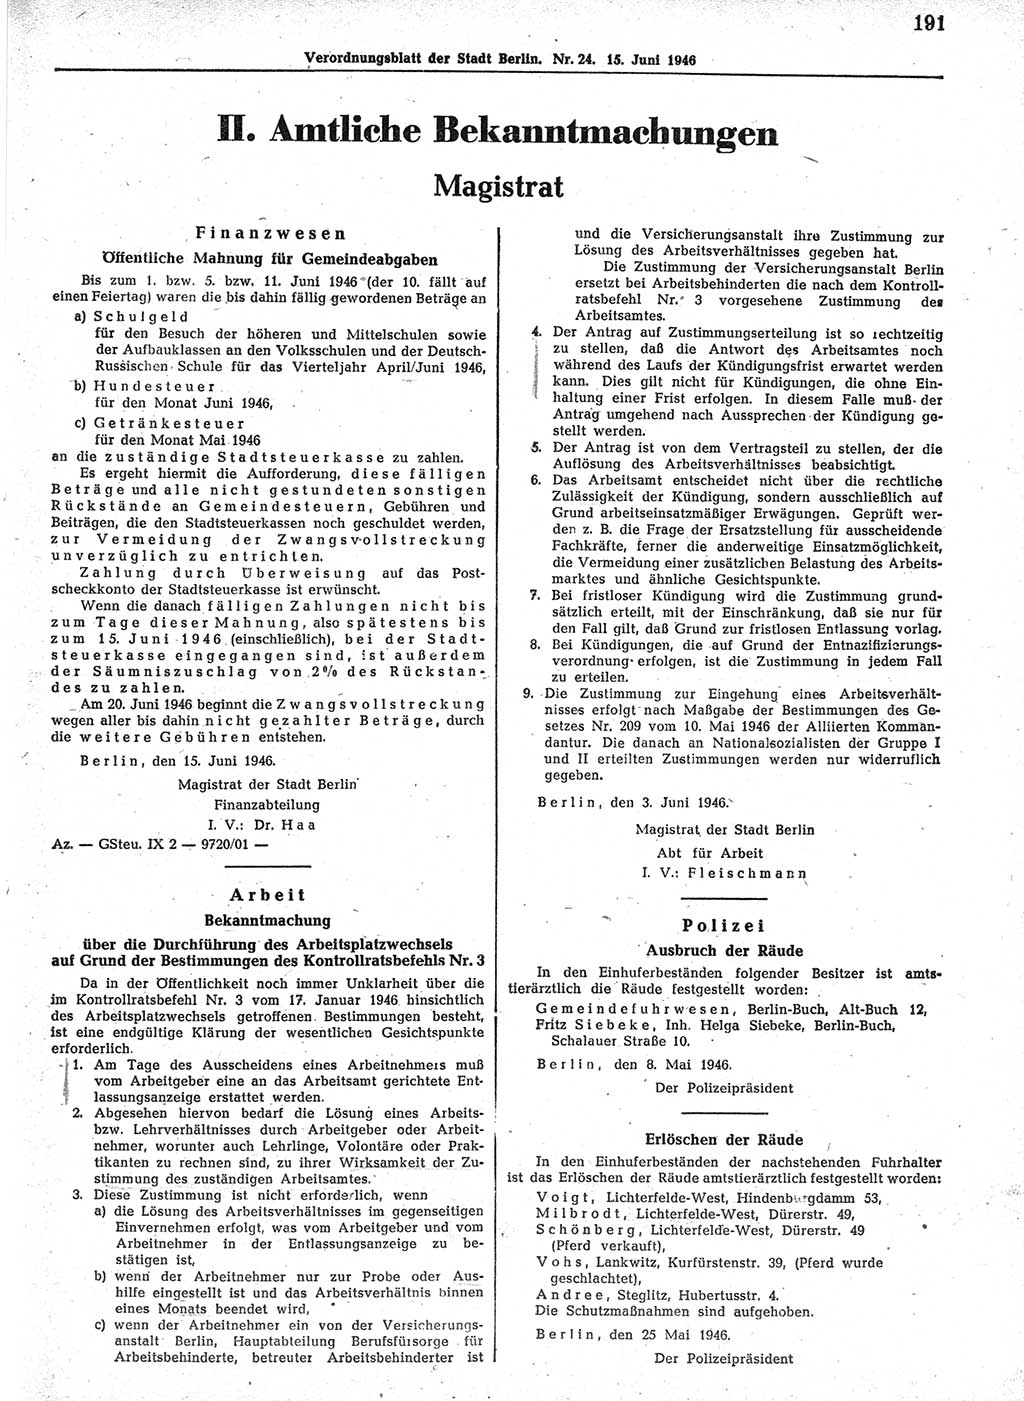 Verordnungsblatt (VOBl.) der Stadt Berlin, für Groß-Berlin 1946, Seite 191 (VOBl. Bln. 1946, S. 191)